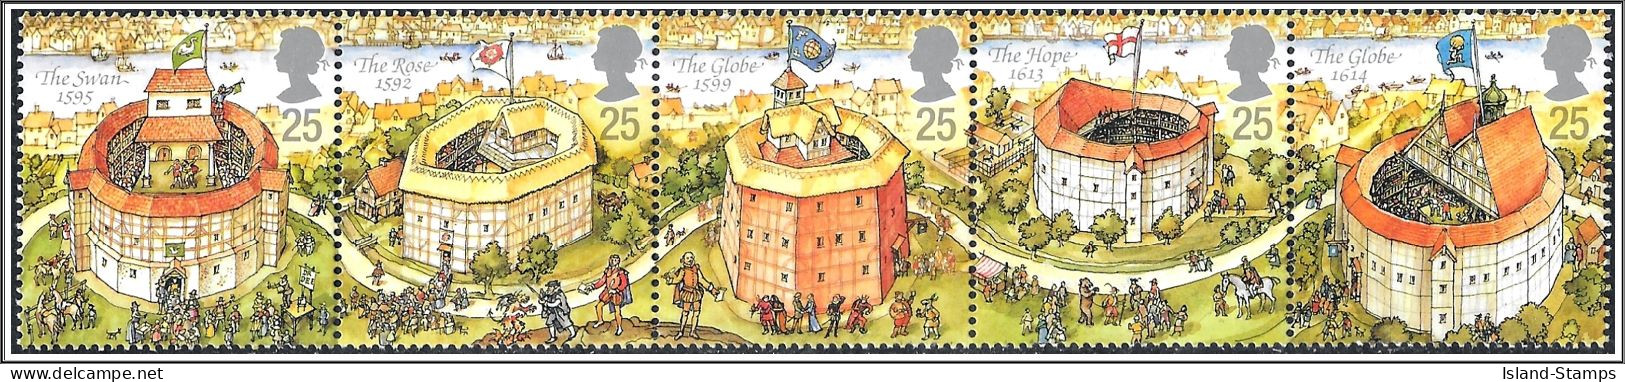 SG1882-1886 1995 Shakespeare Stamp Set Unmounted Mint Hrd2a - Ongebruikt